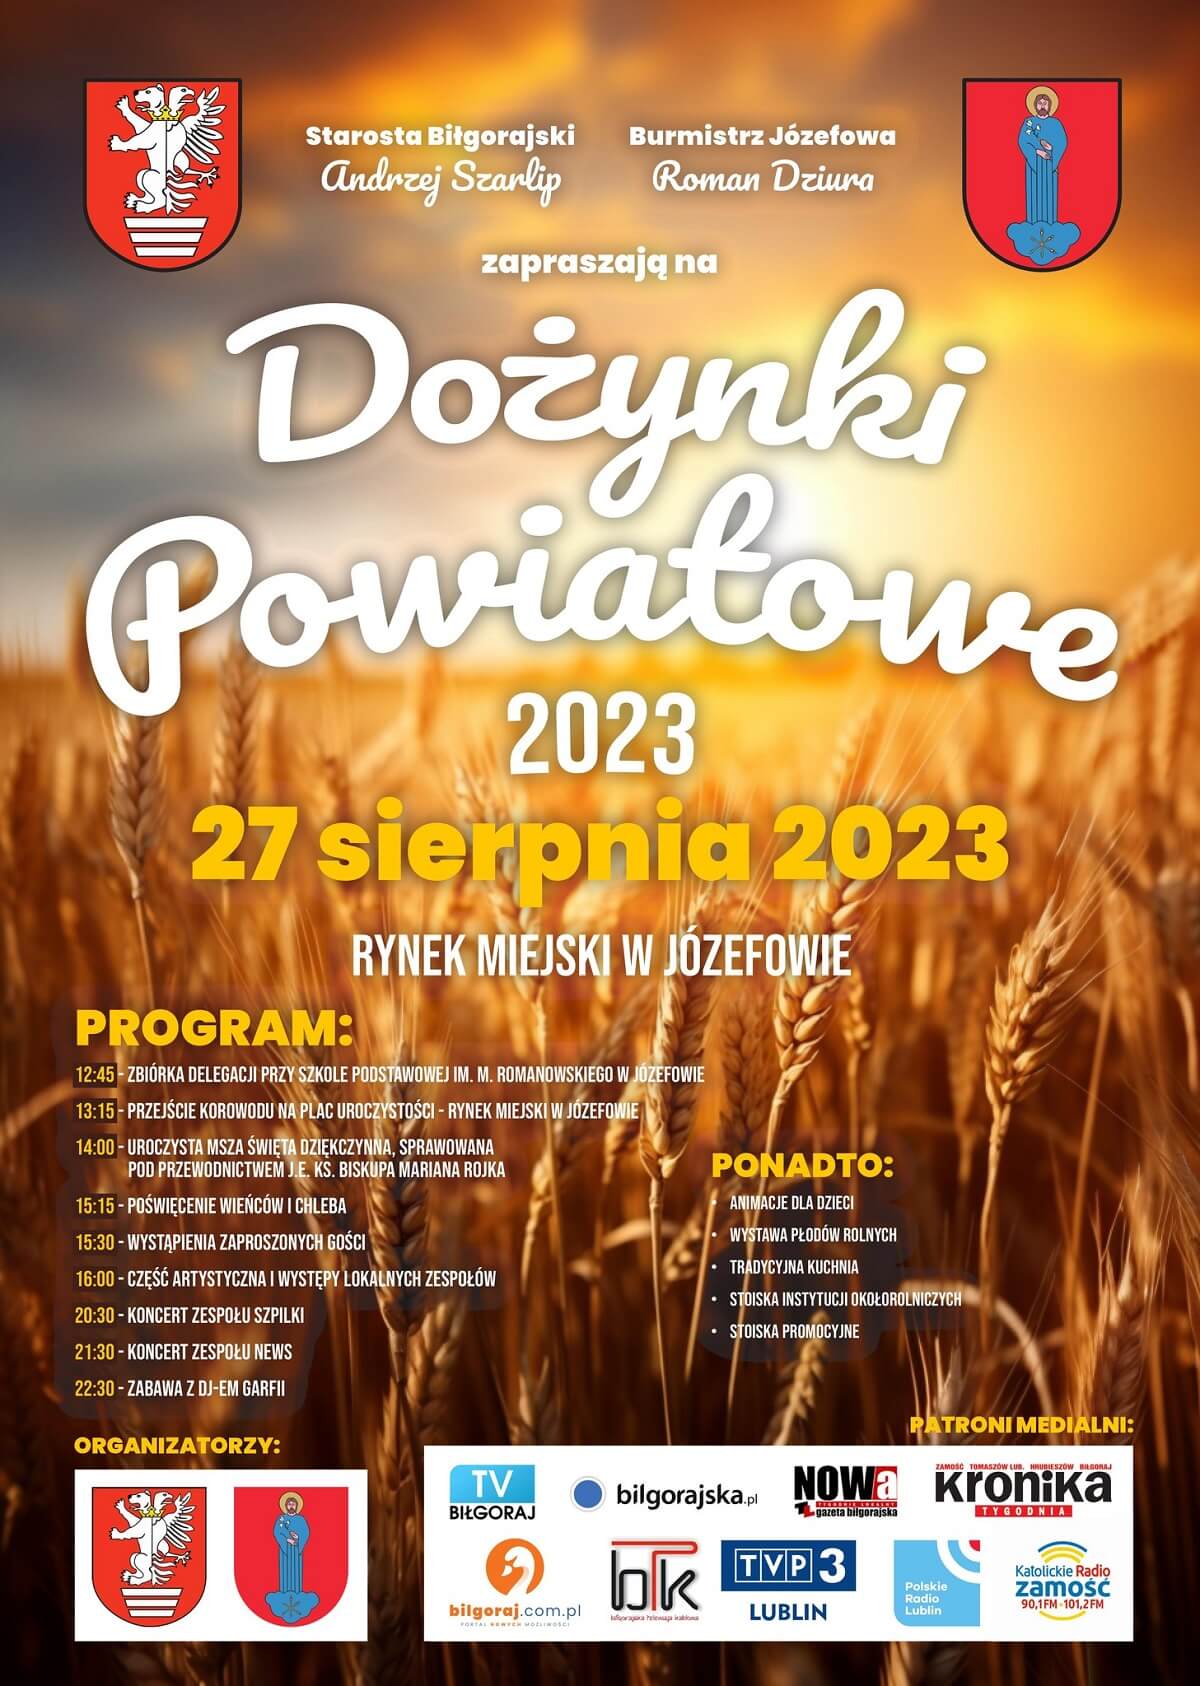 Dożynki powiatu biłgorajskiego w Józefowie 2023 - plakat, program wydarzenia